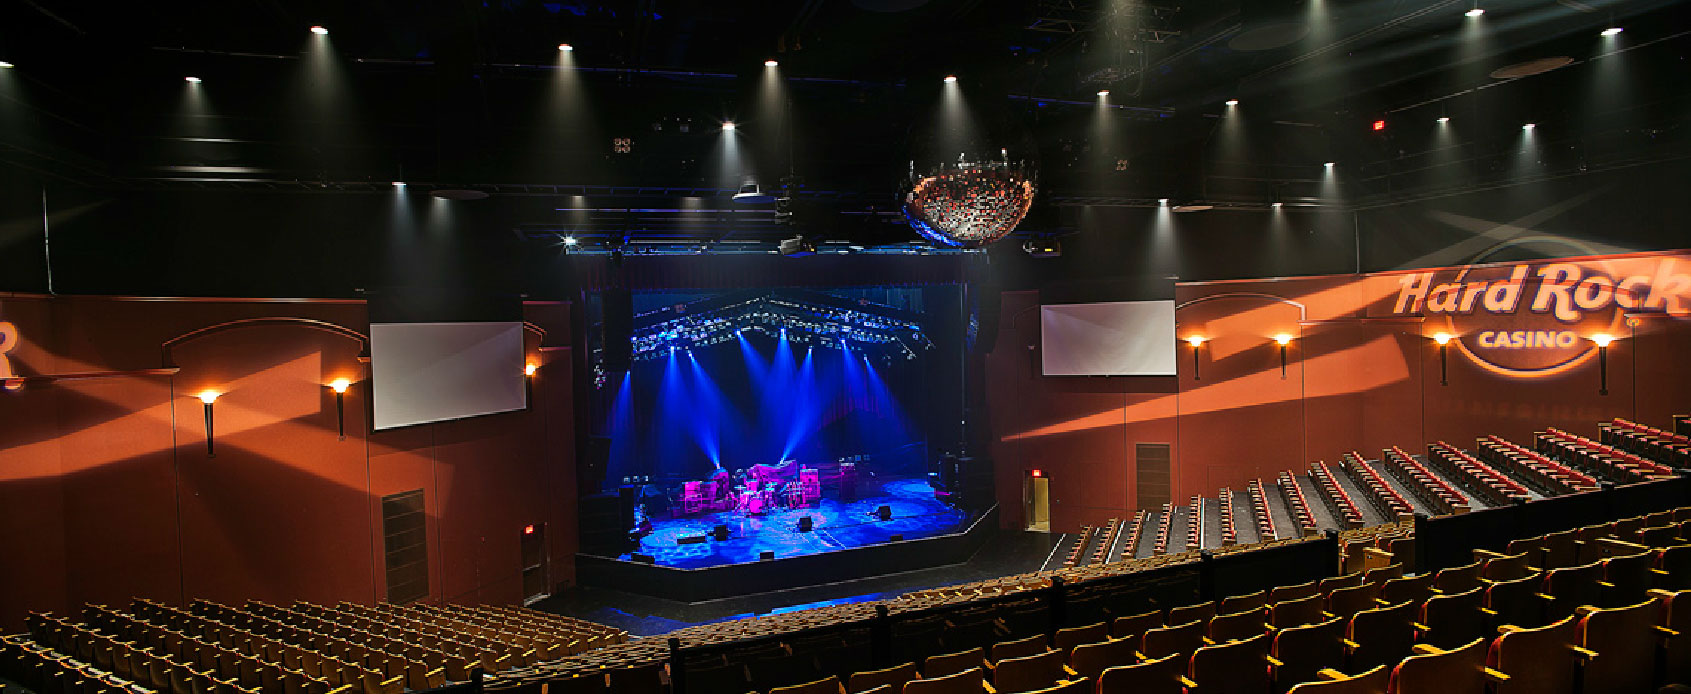 Hard Rock Casino Theatre